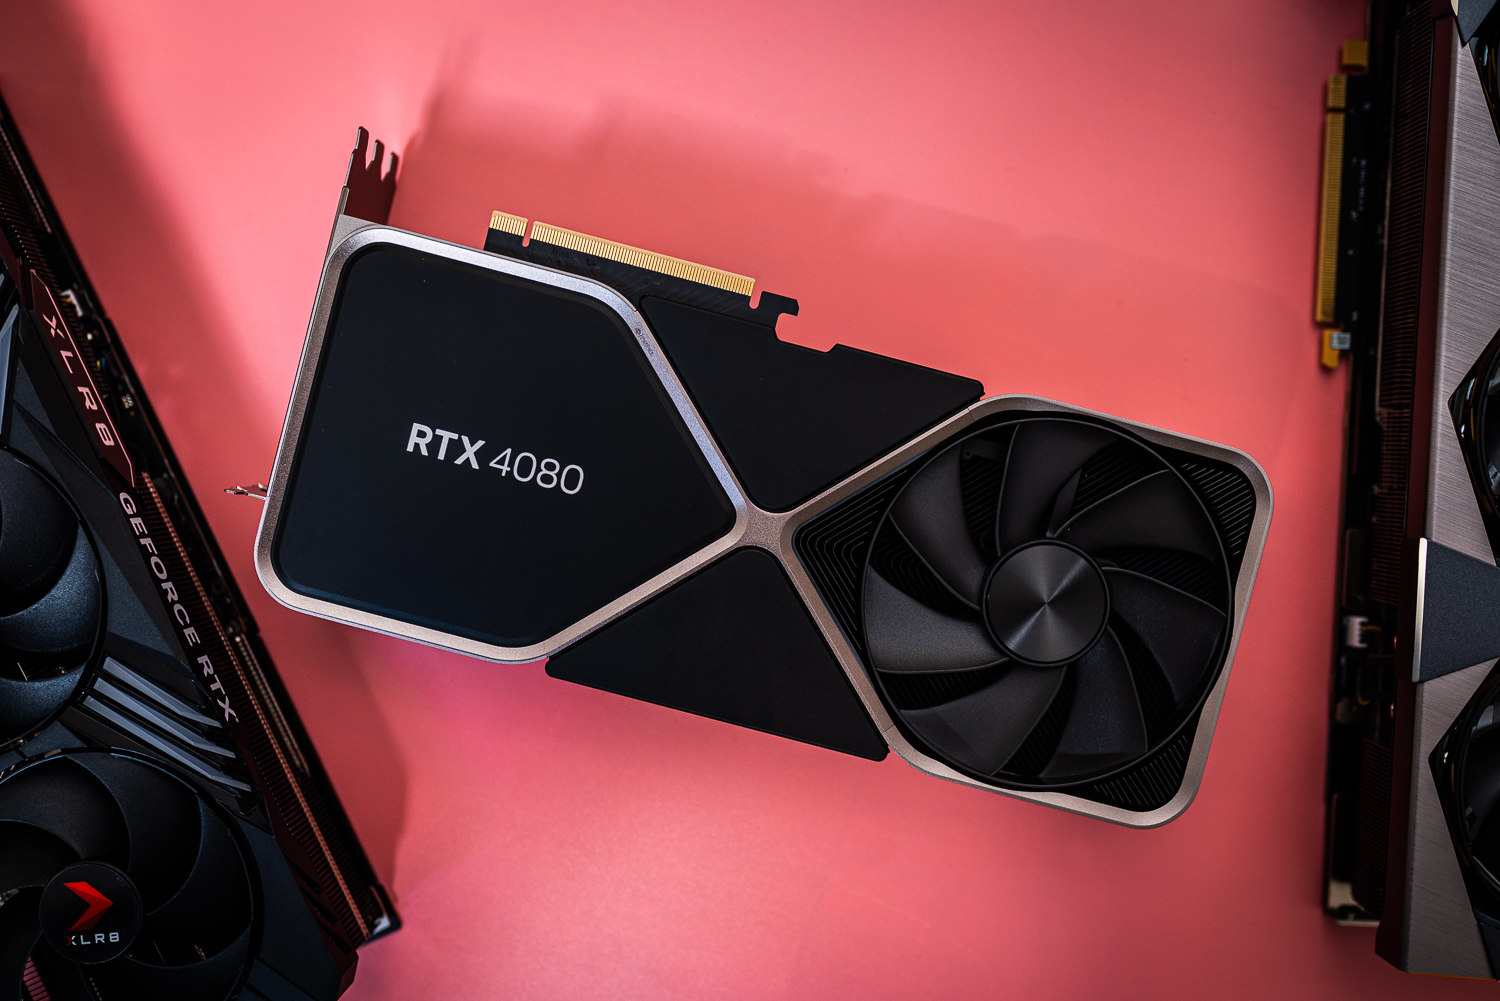 Nvidia GeForce RTX 4080 liegt auf einer rosafarbenen Oberfläche.